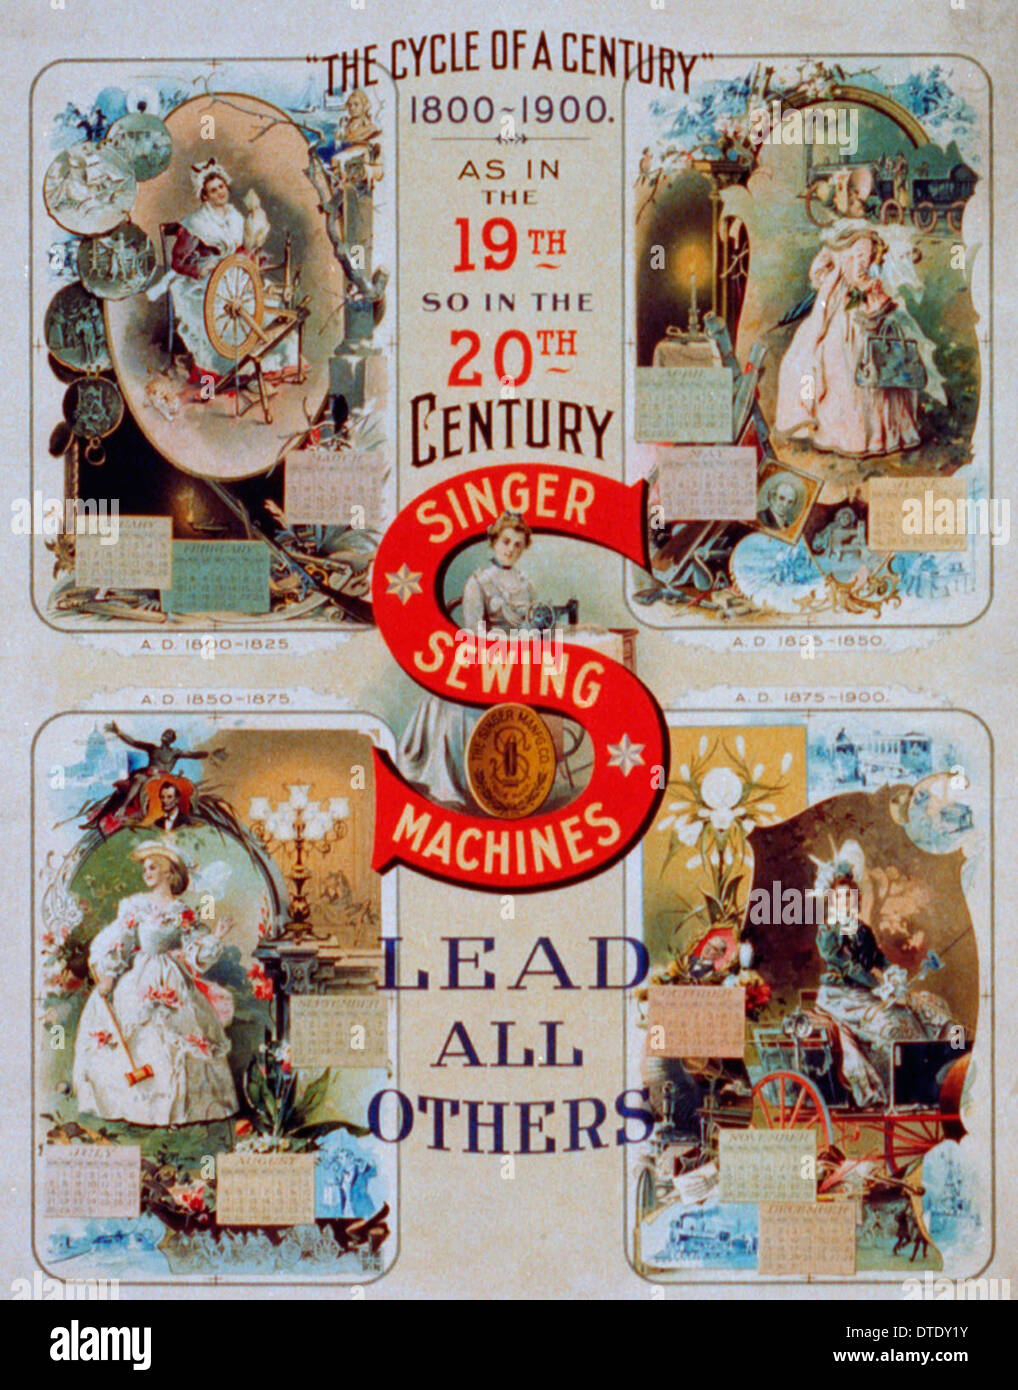 "Der Zyklus eines Jahrhunderts" 1800-1900. Singer Nähmaschinen führen alle anderen - Singer Nähmaschine Werbung um 1900 Stockfoto